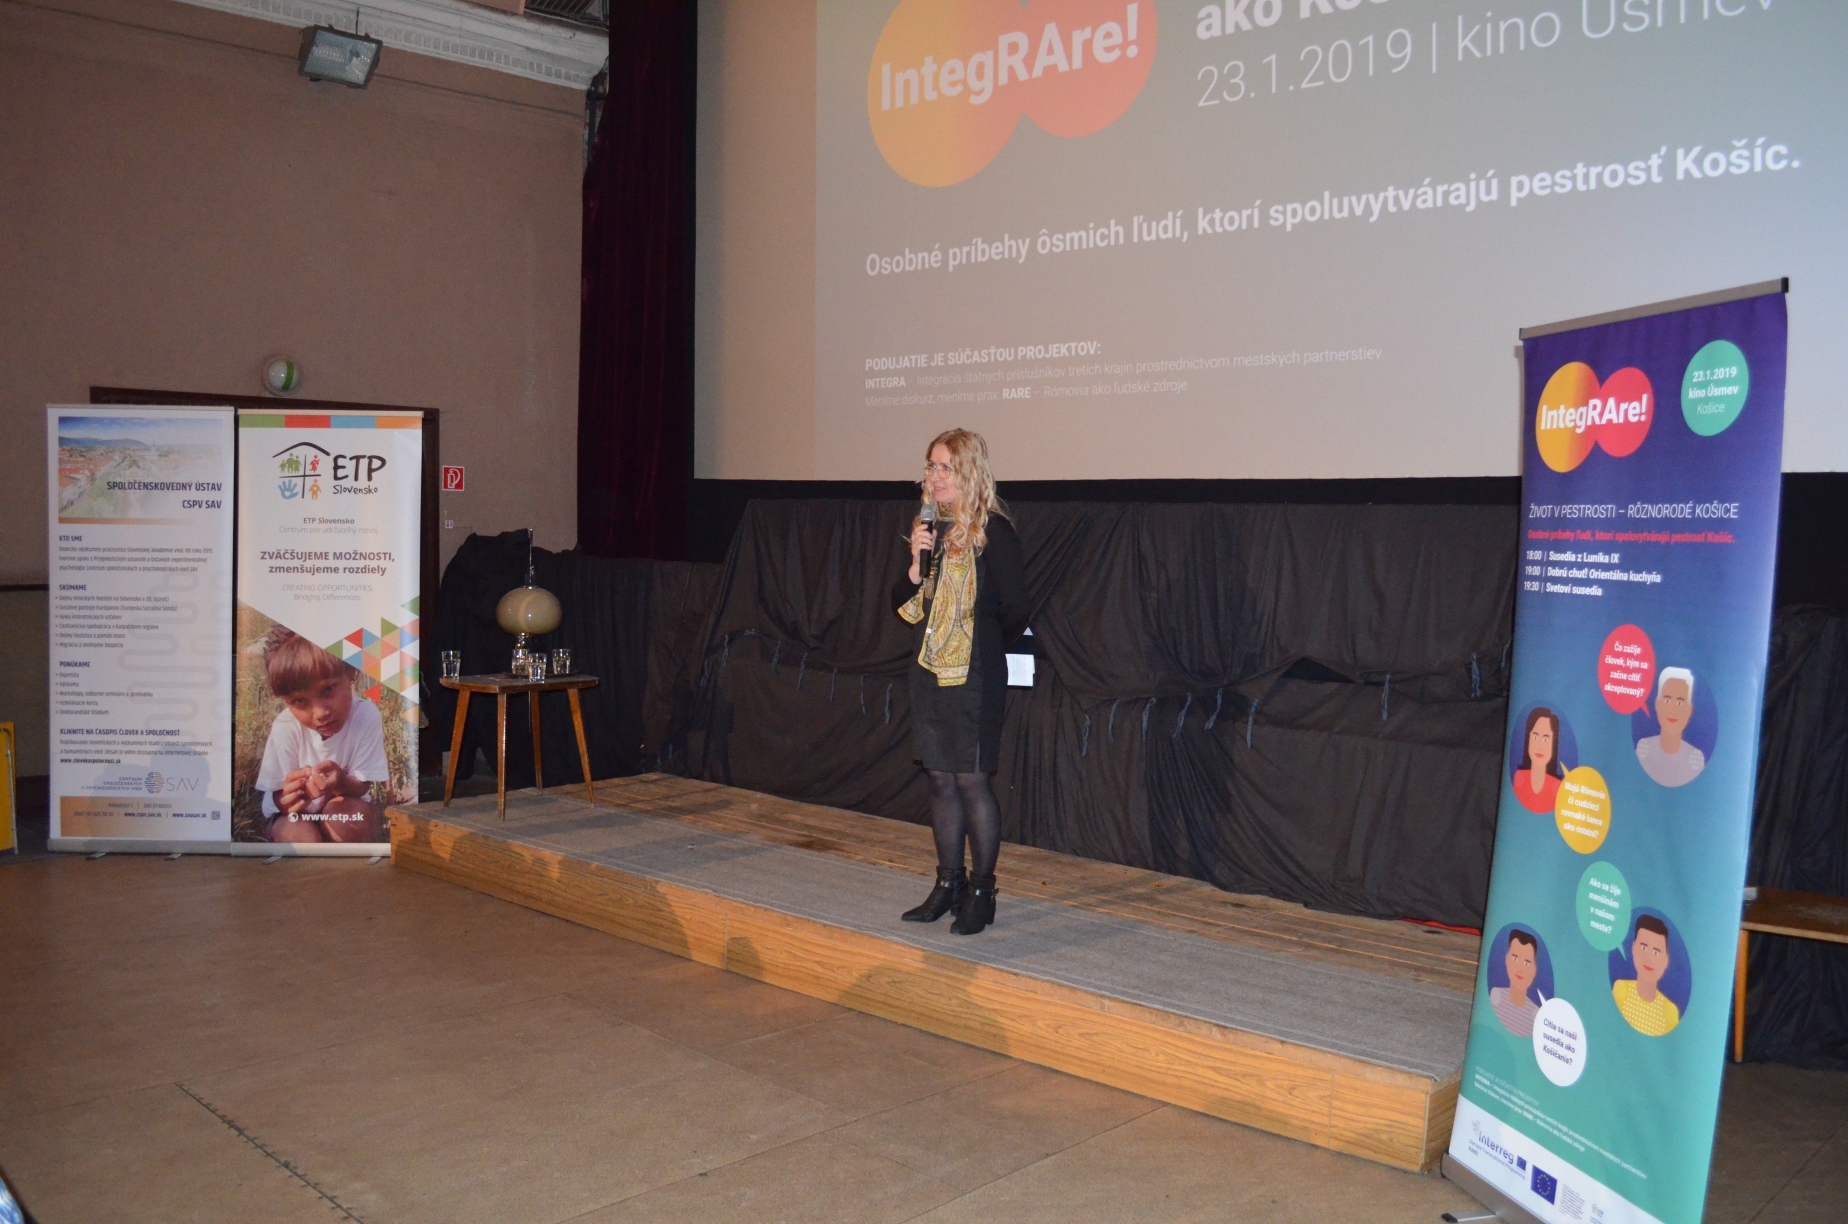 Podujatie IntegRARE! Život v pestrosti – rôznorodé Košice